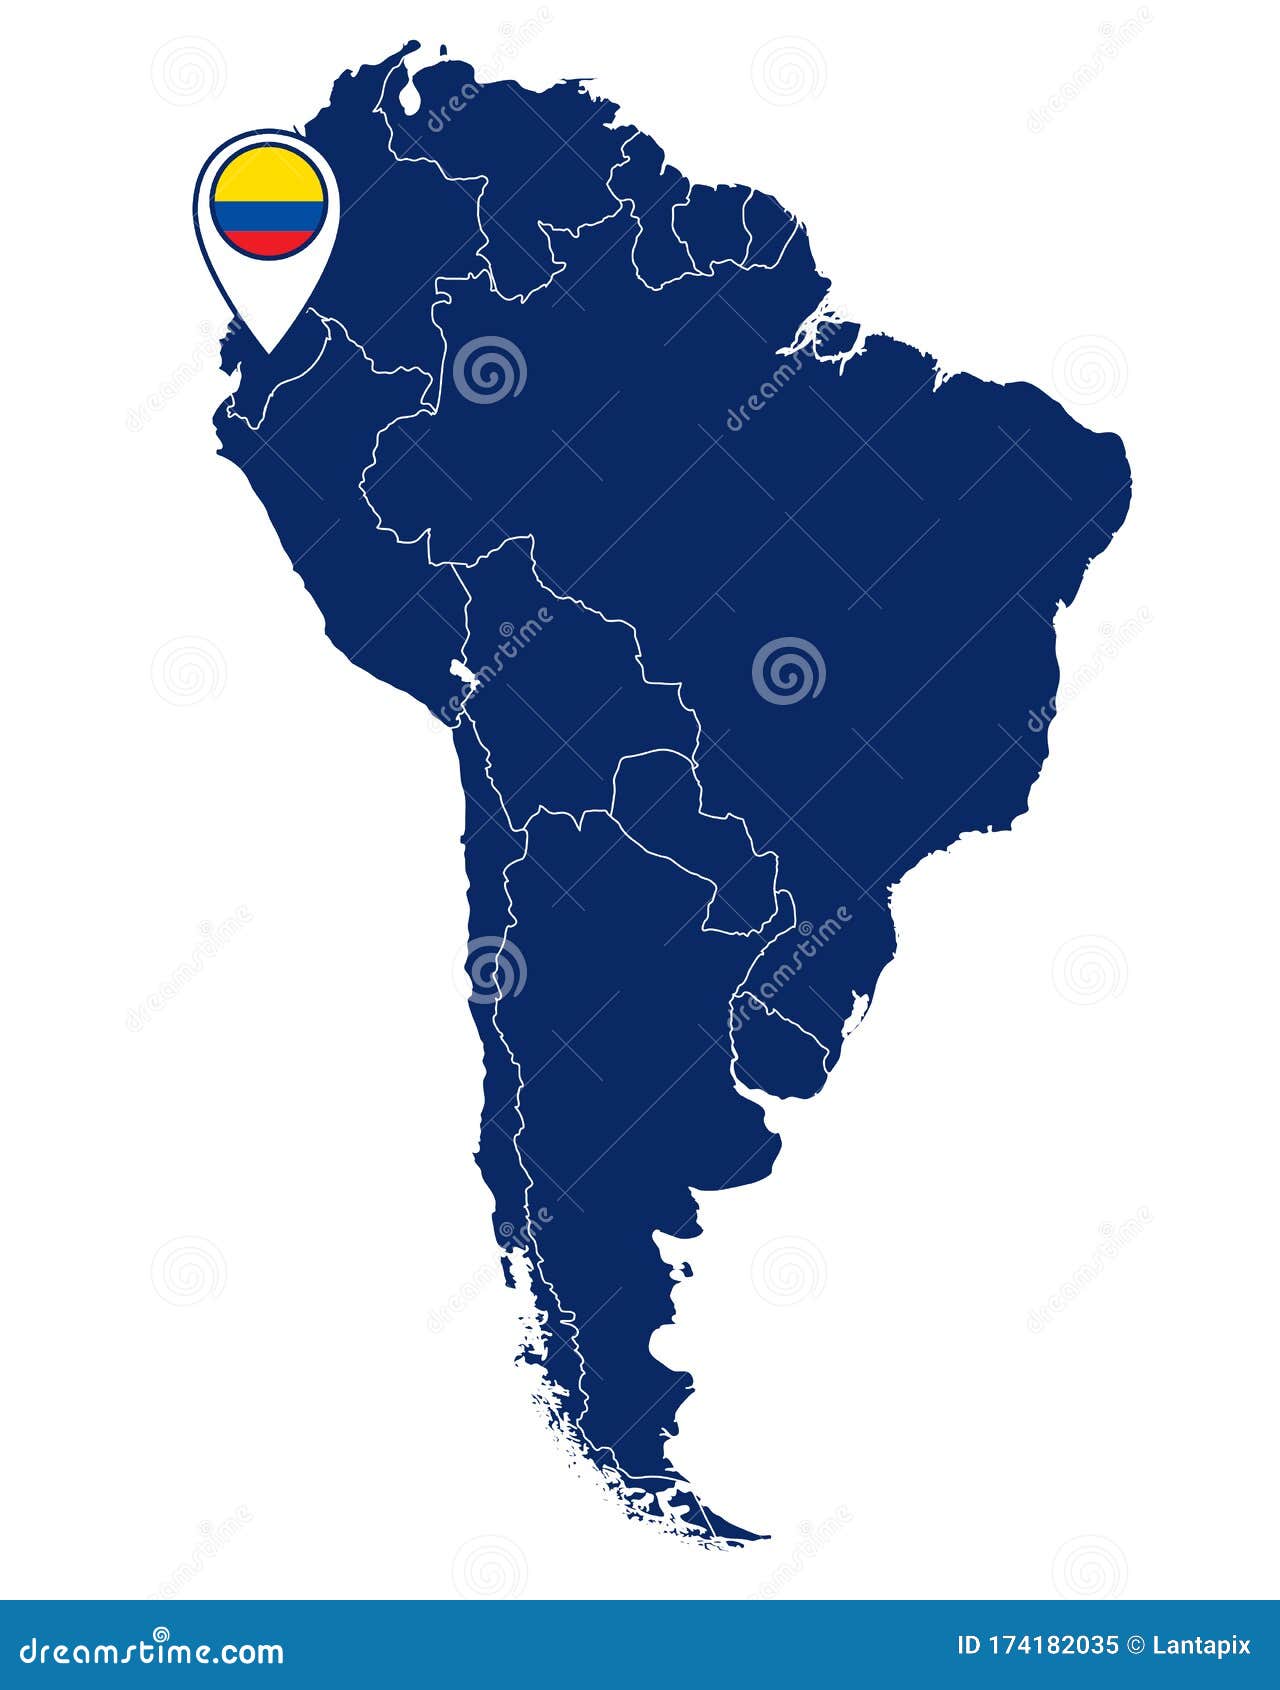 南美洲地理标志和地图中的厄瓜多尔国旗向量例证 插画包括有